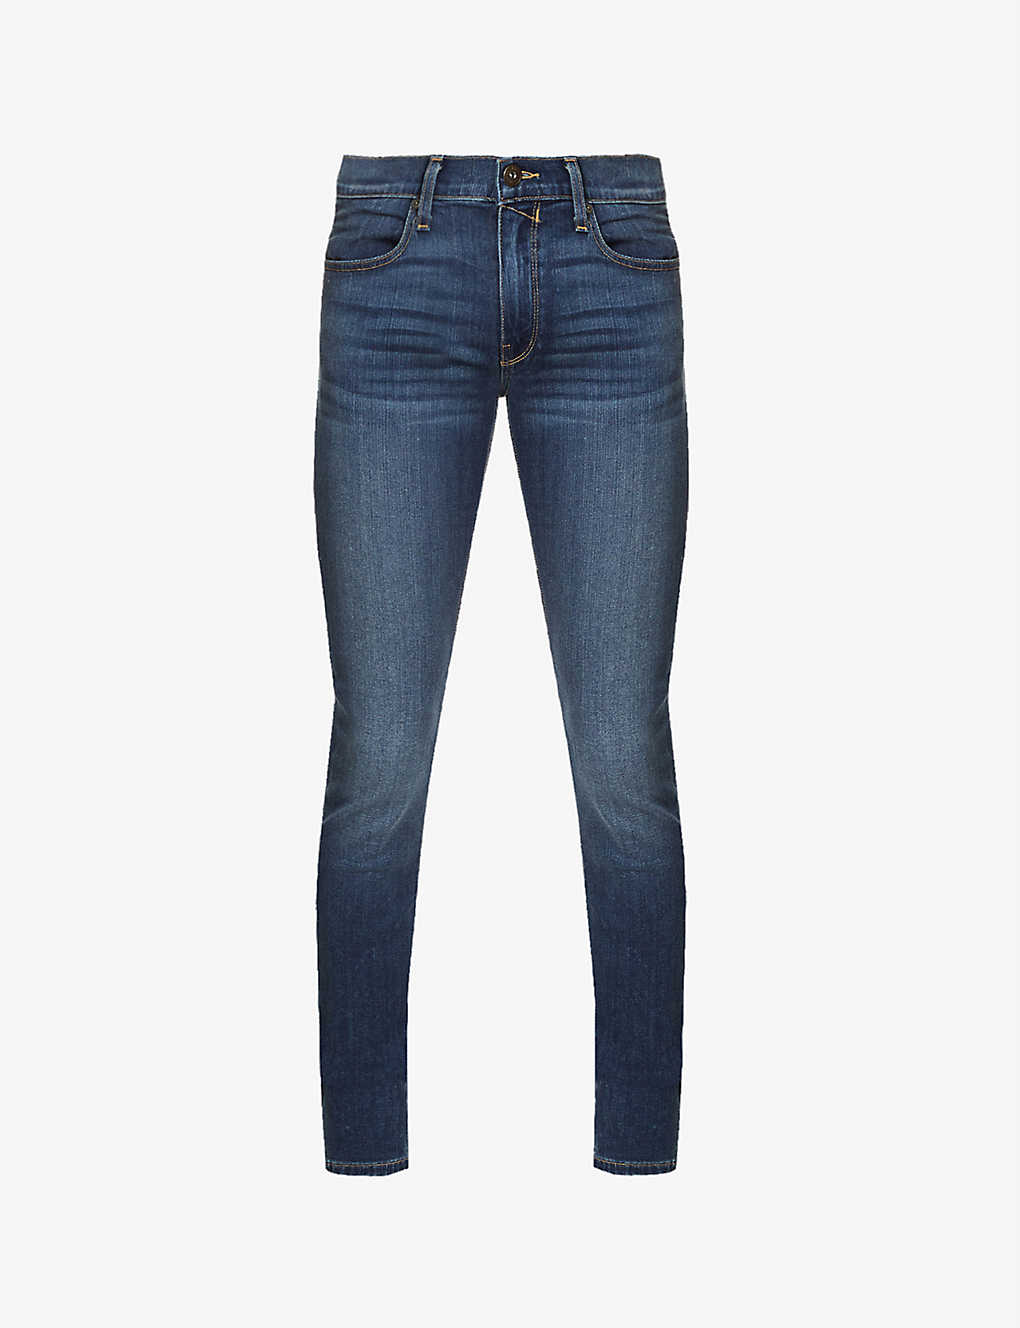 Shop Paige Men's Blue Croft Birch Skinny-fit Jeans